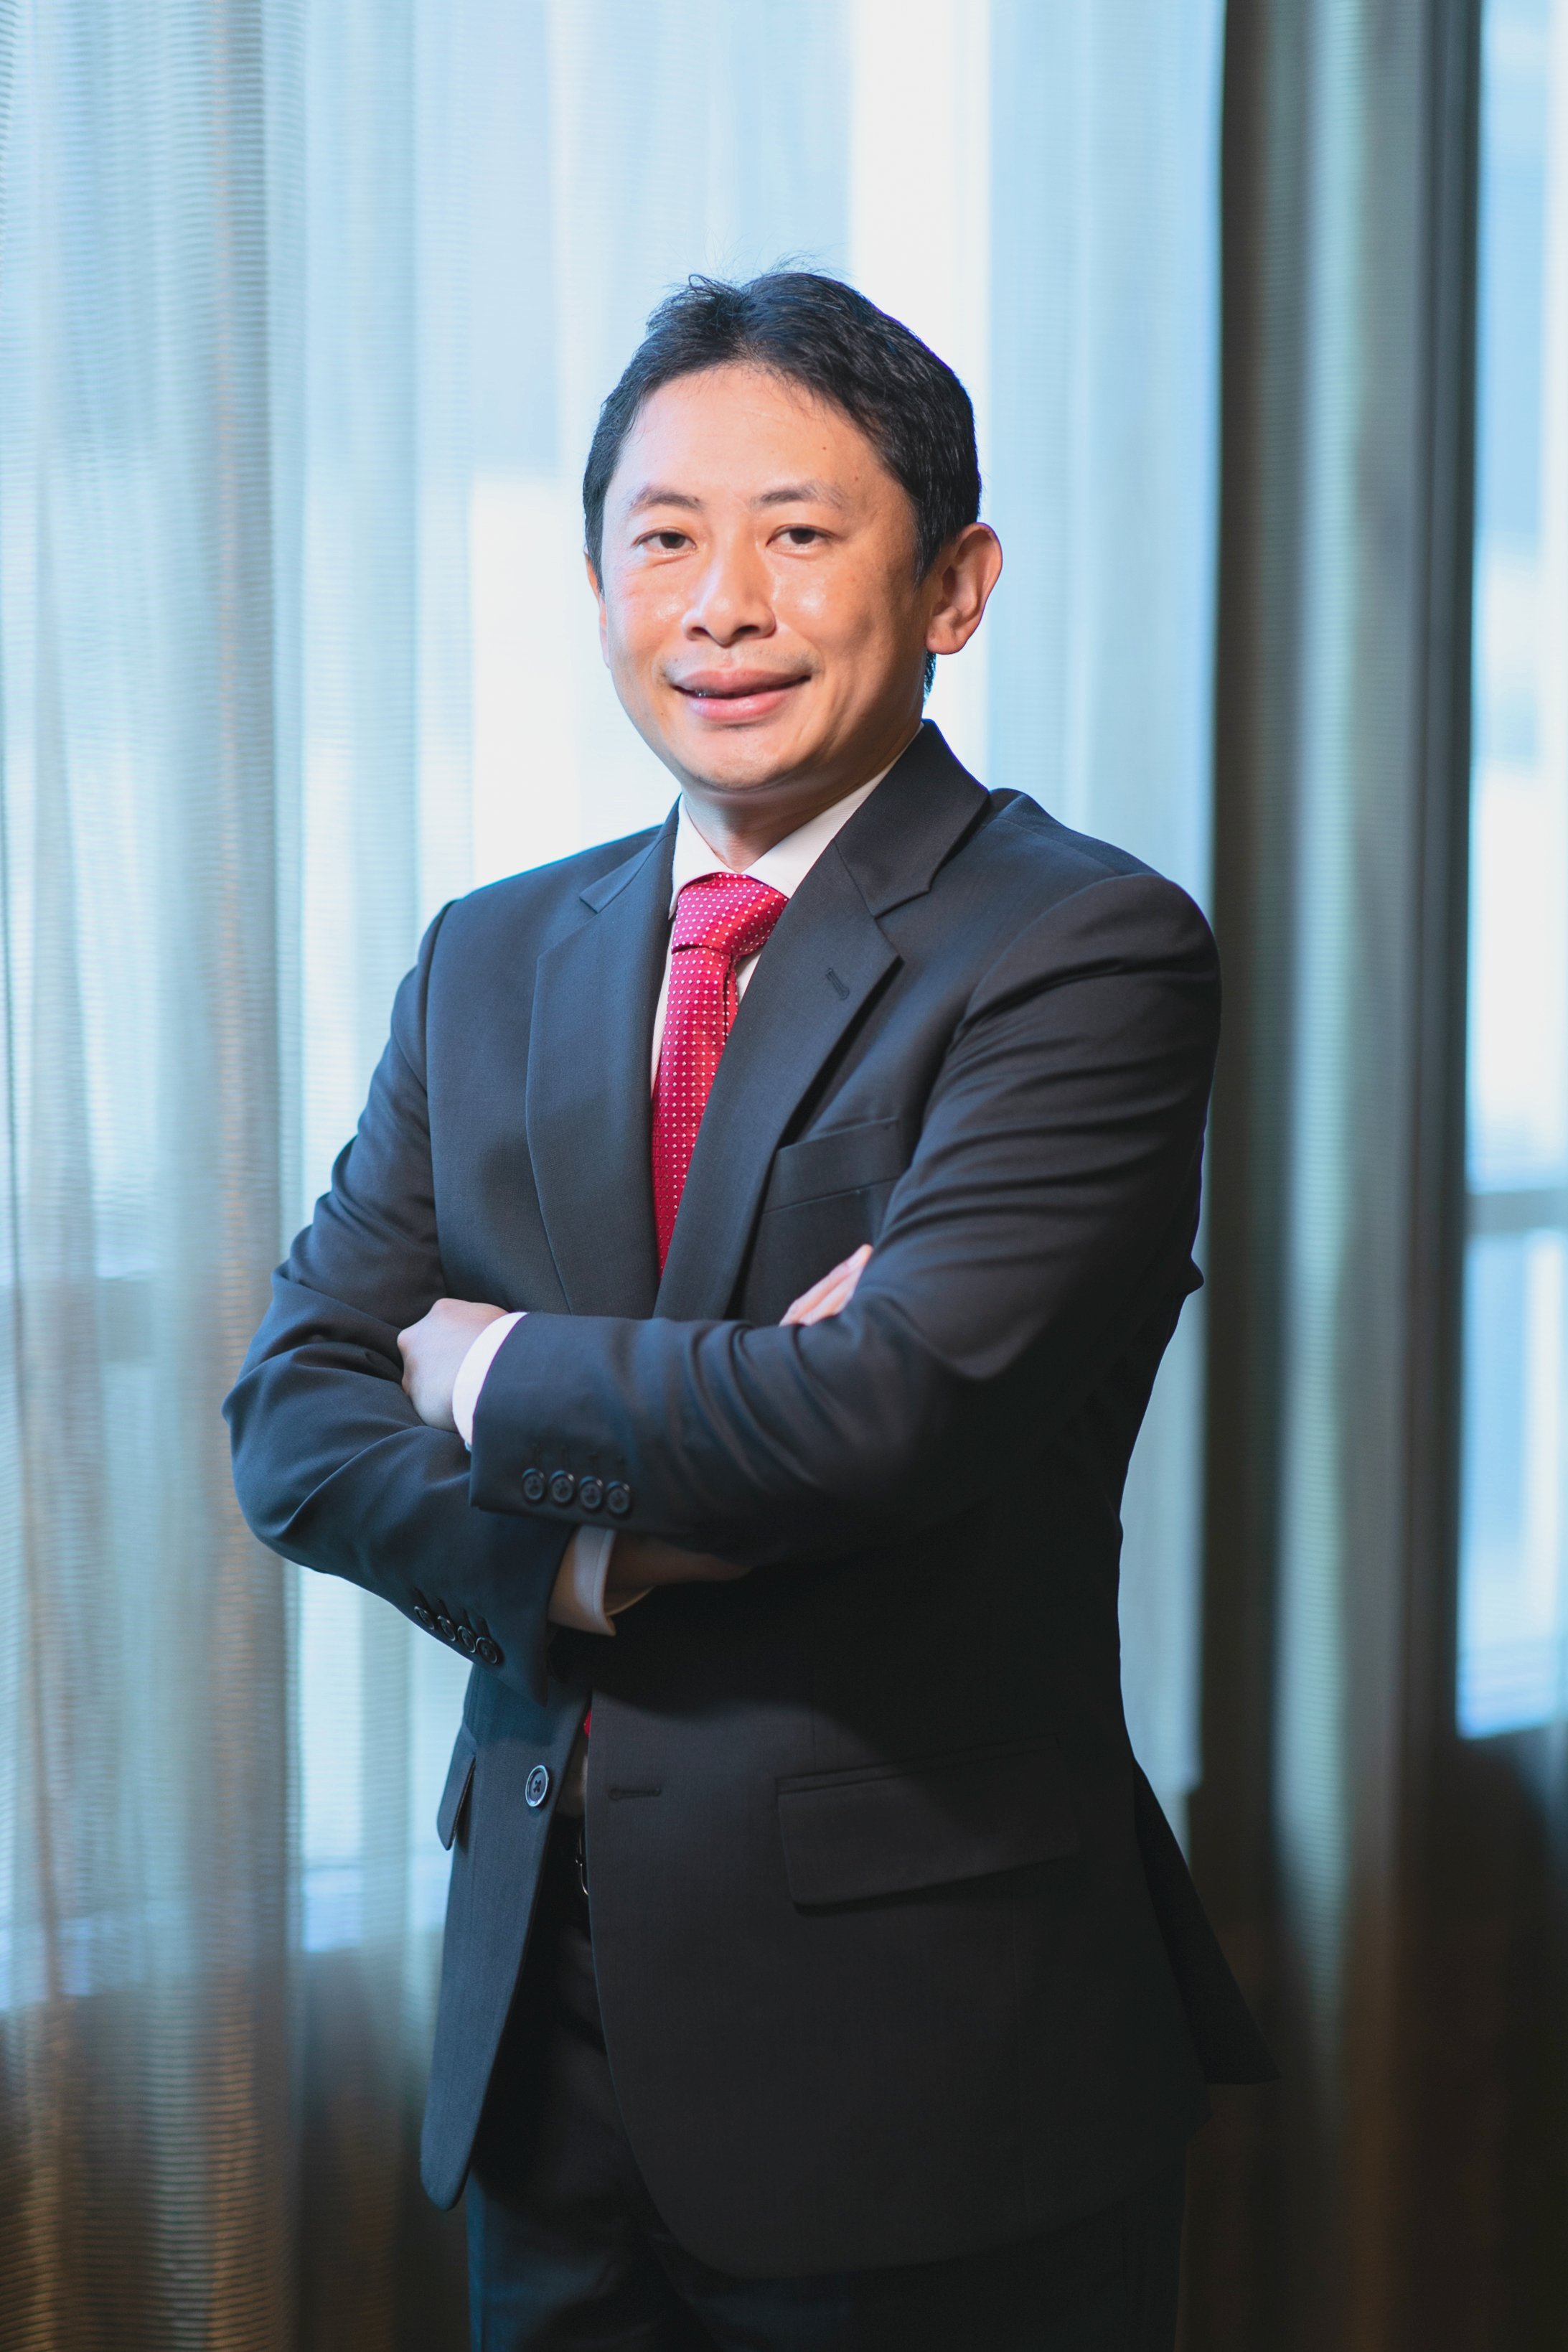 “โทชิฮิเดะ โอตานิ ผู้อำนวยการด้าน Sustainability Transformation ของเอบีม คอนซัลติ้ง (ประเทศไทย)